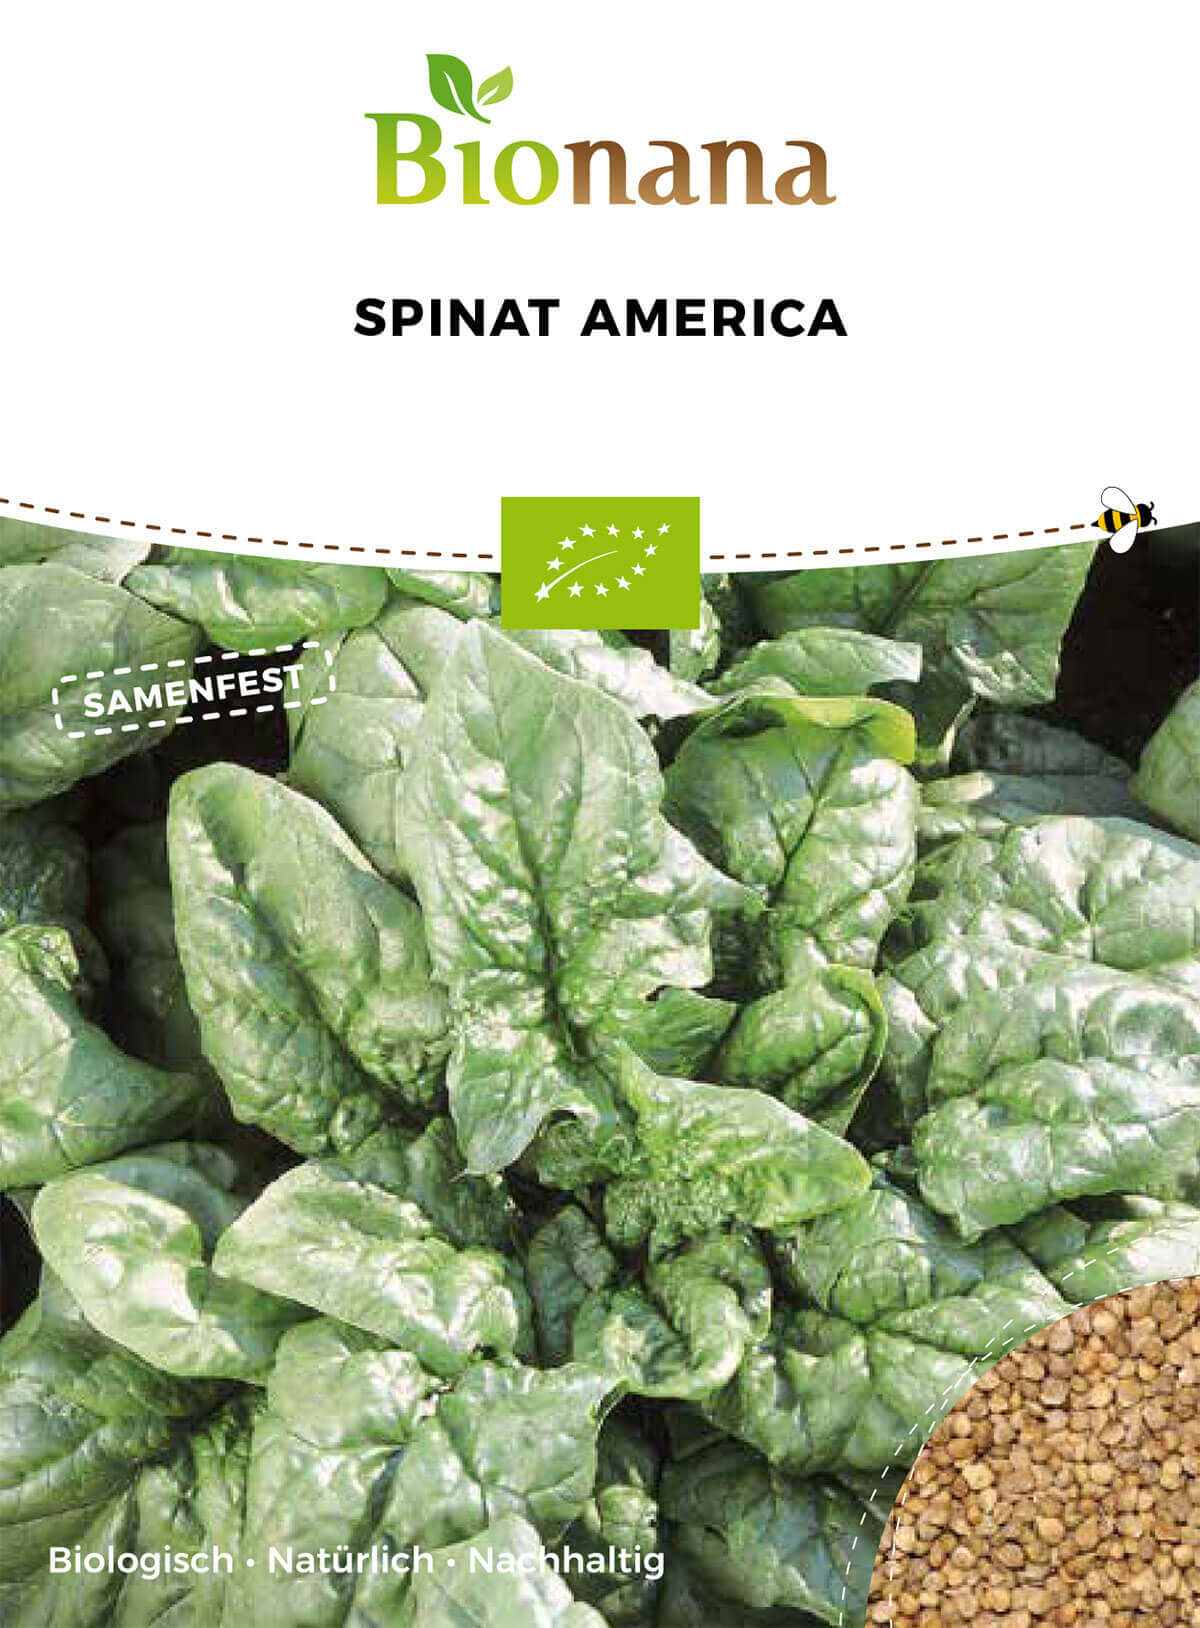 150x Bio Spinat Securo Ökologische Samen Salat Gemüse Garten K102 